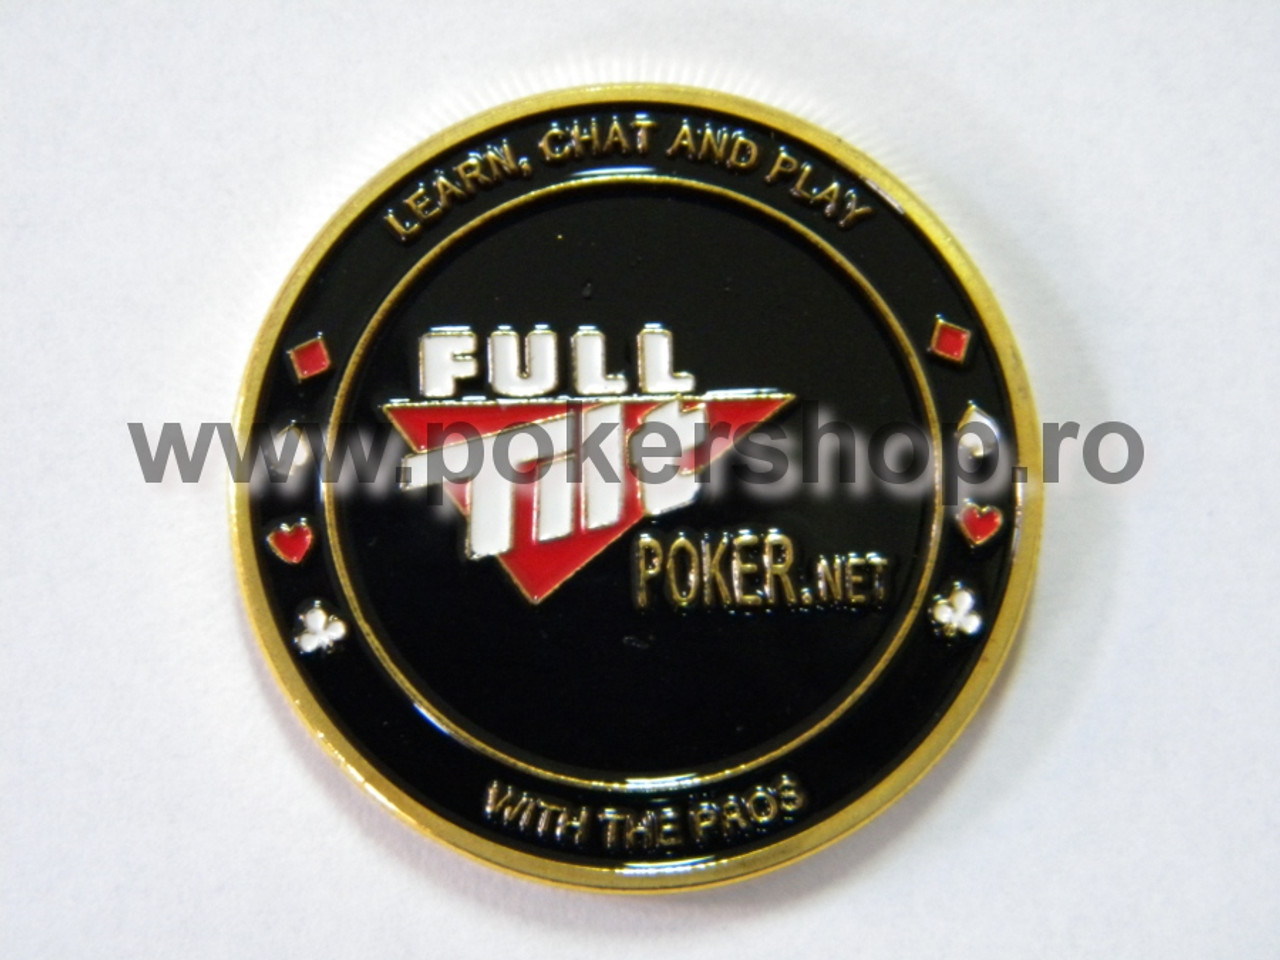 Poker Card Guard - Full Tilt Poker